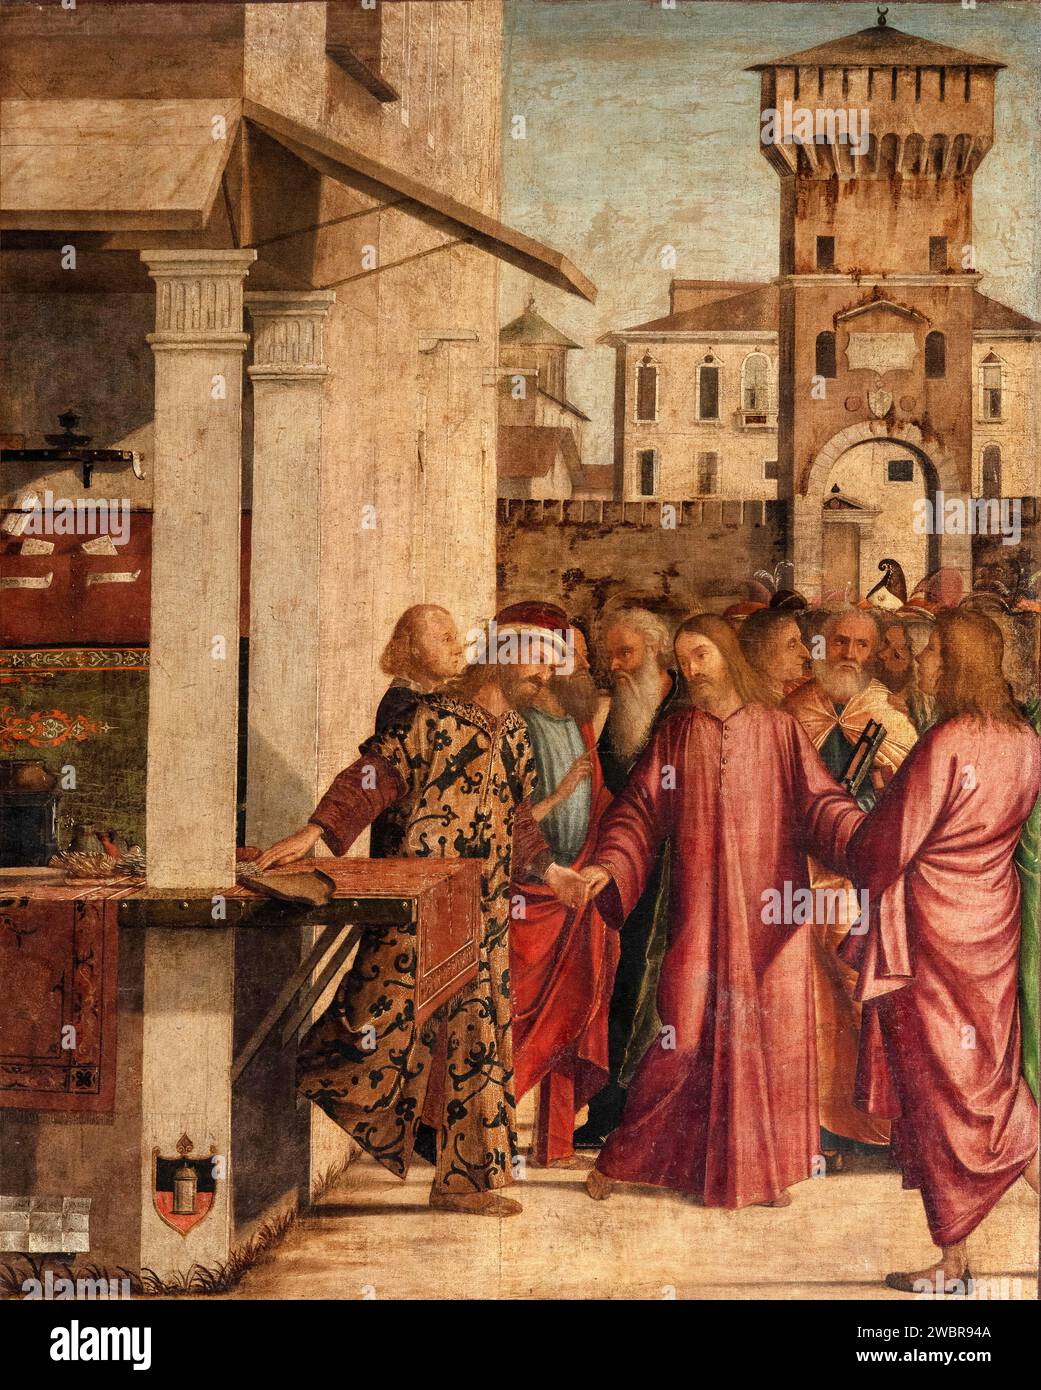 Vocazione di S. Matteo  - olio su tela -  Vittore Carpaccio - 1502 - Venezia, Scuola Dalmata dei Santi Giorgio e Trifone, detta anche Scuola di S.Gior Stock Photo